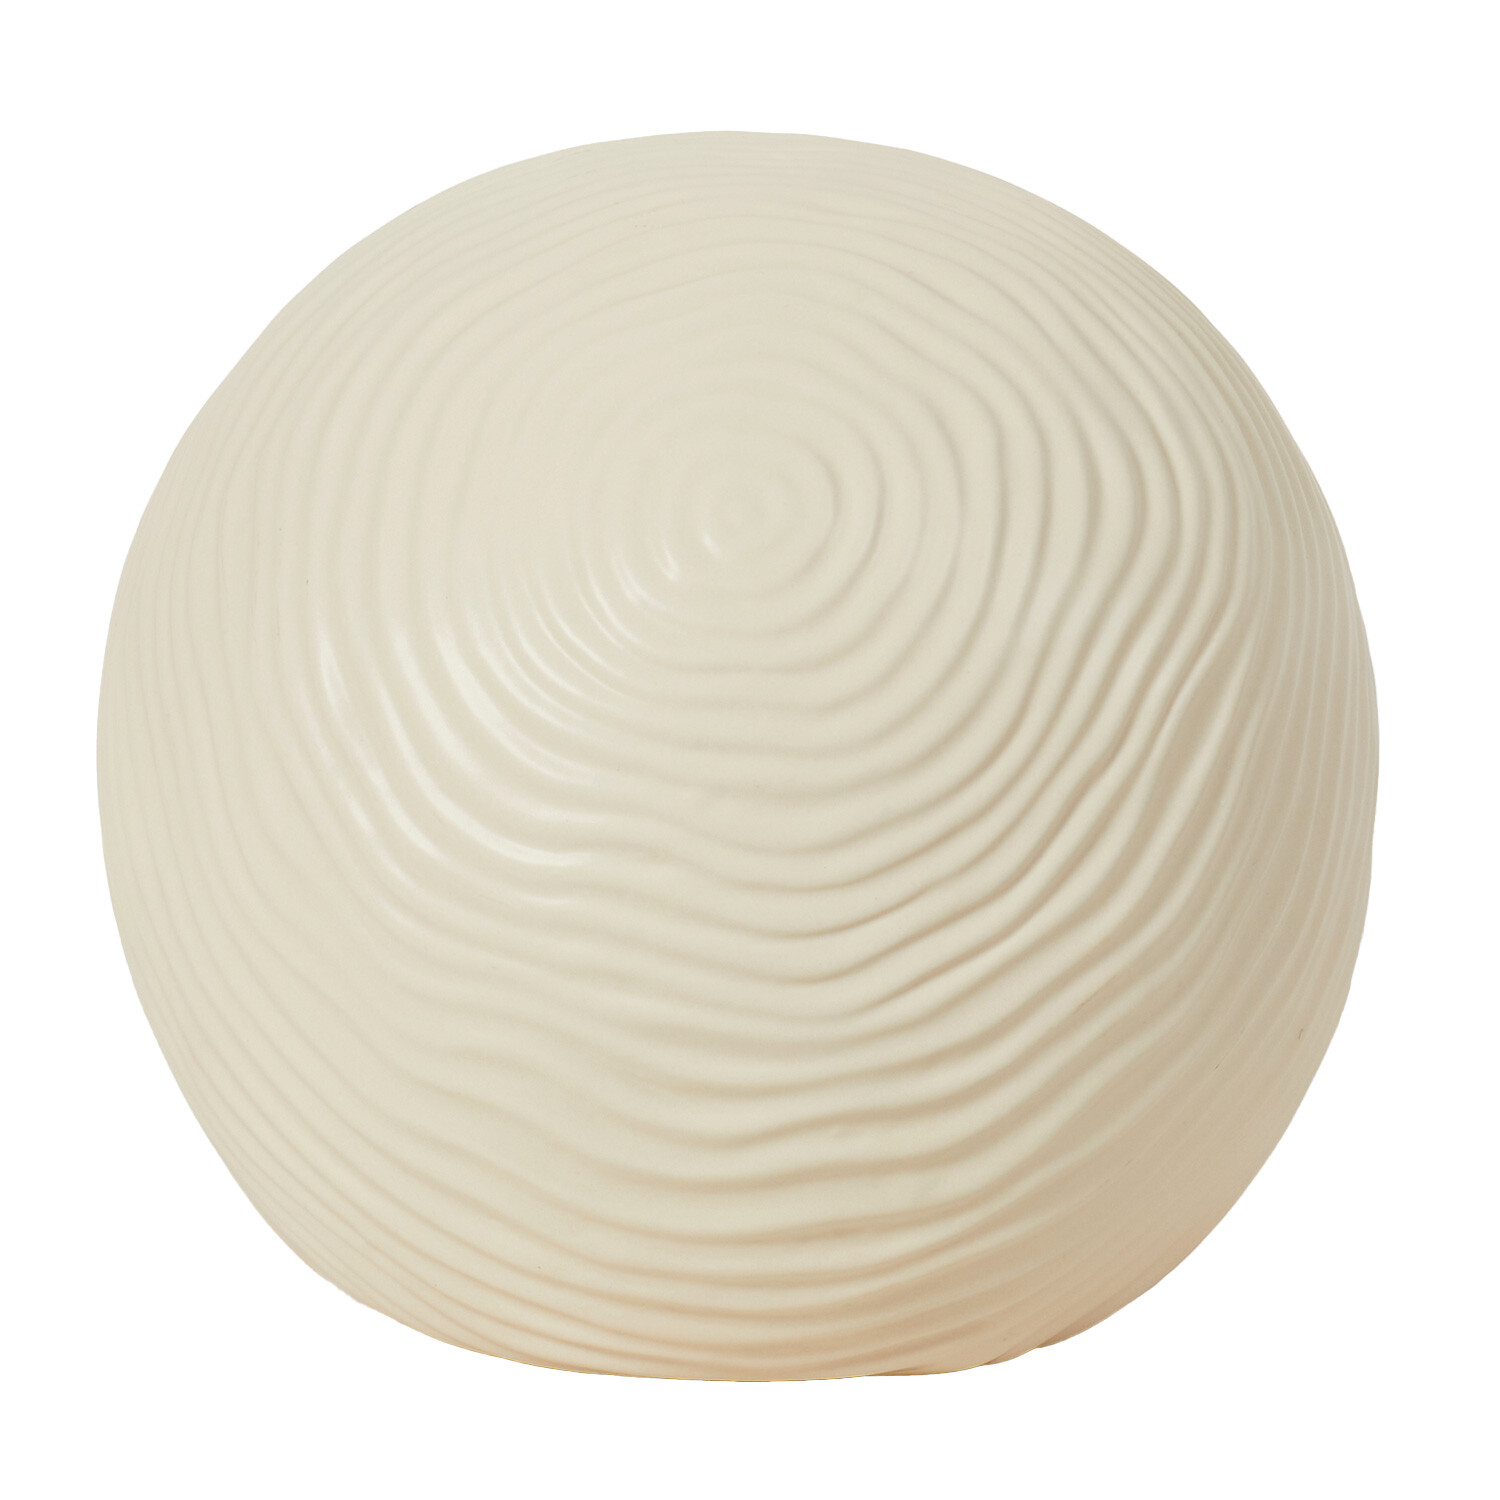 Cream Ceramic Ball - Cream / Large Image 2